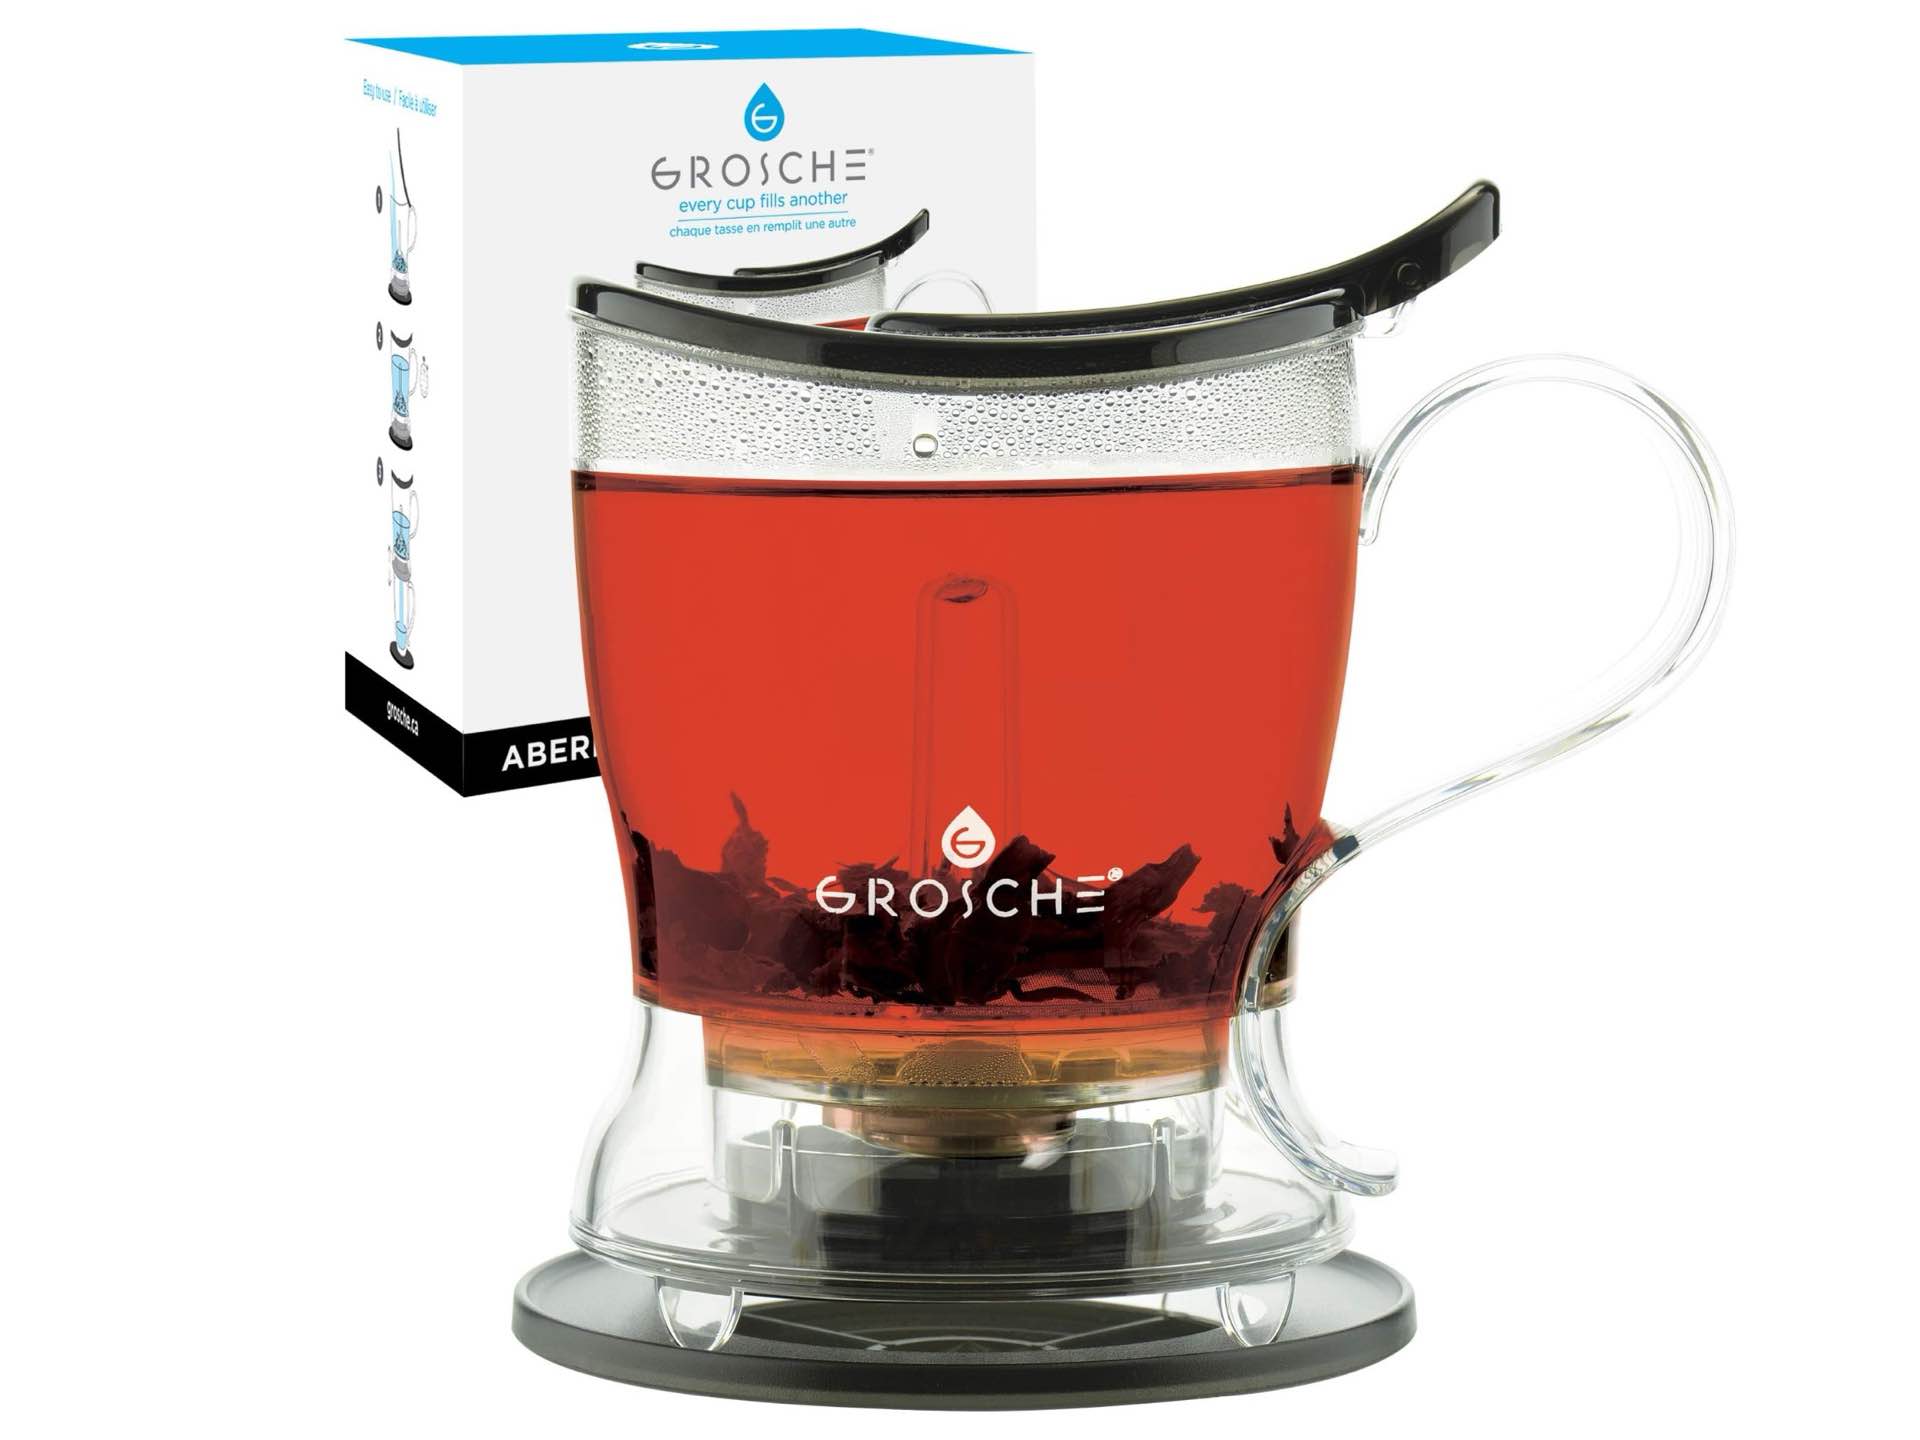 grosche-aberdeen-teapot-and-water-infuser